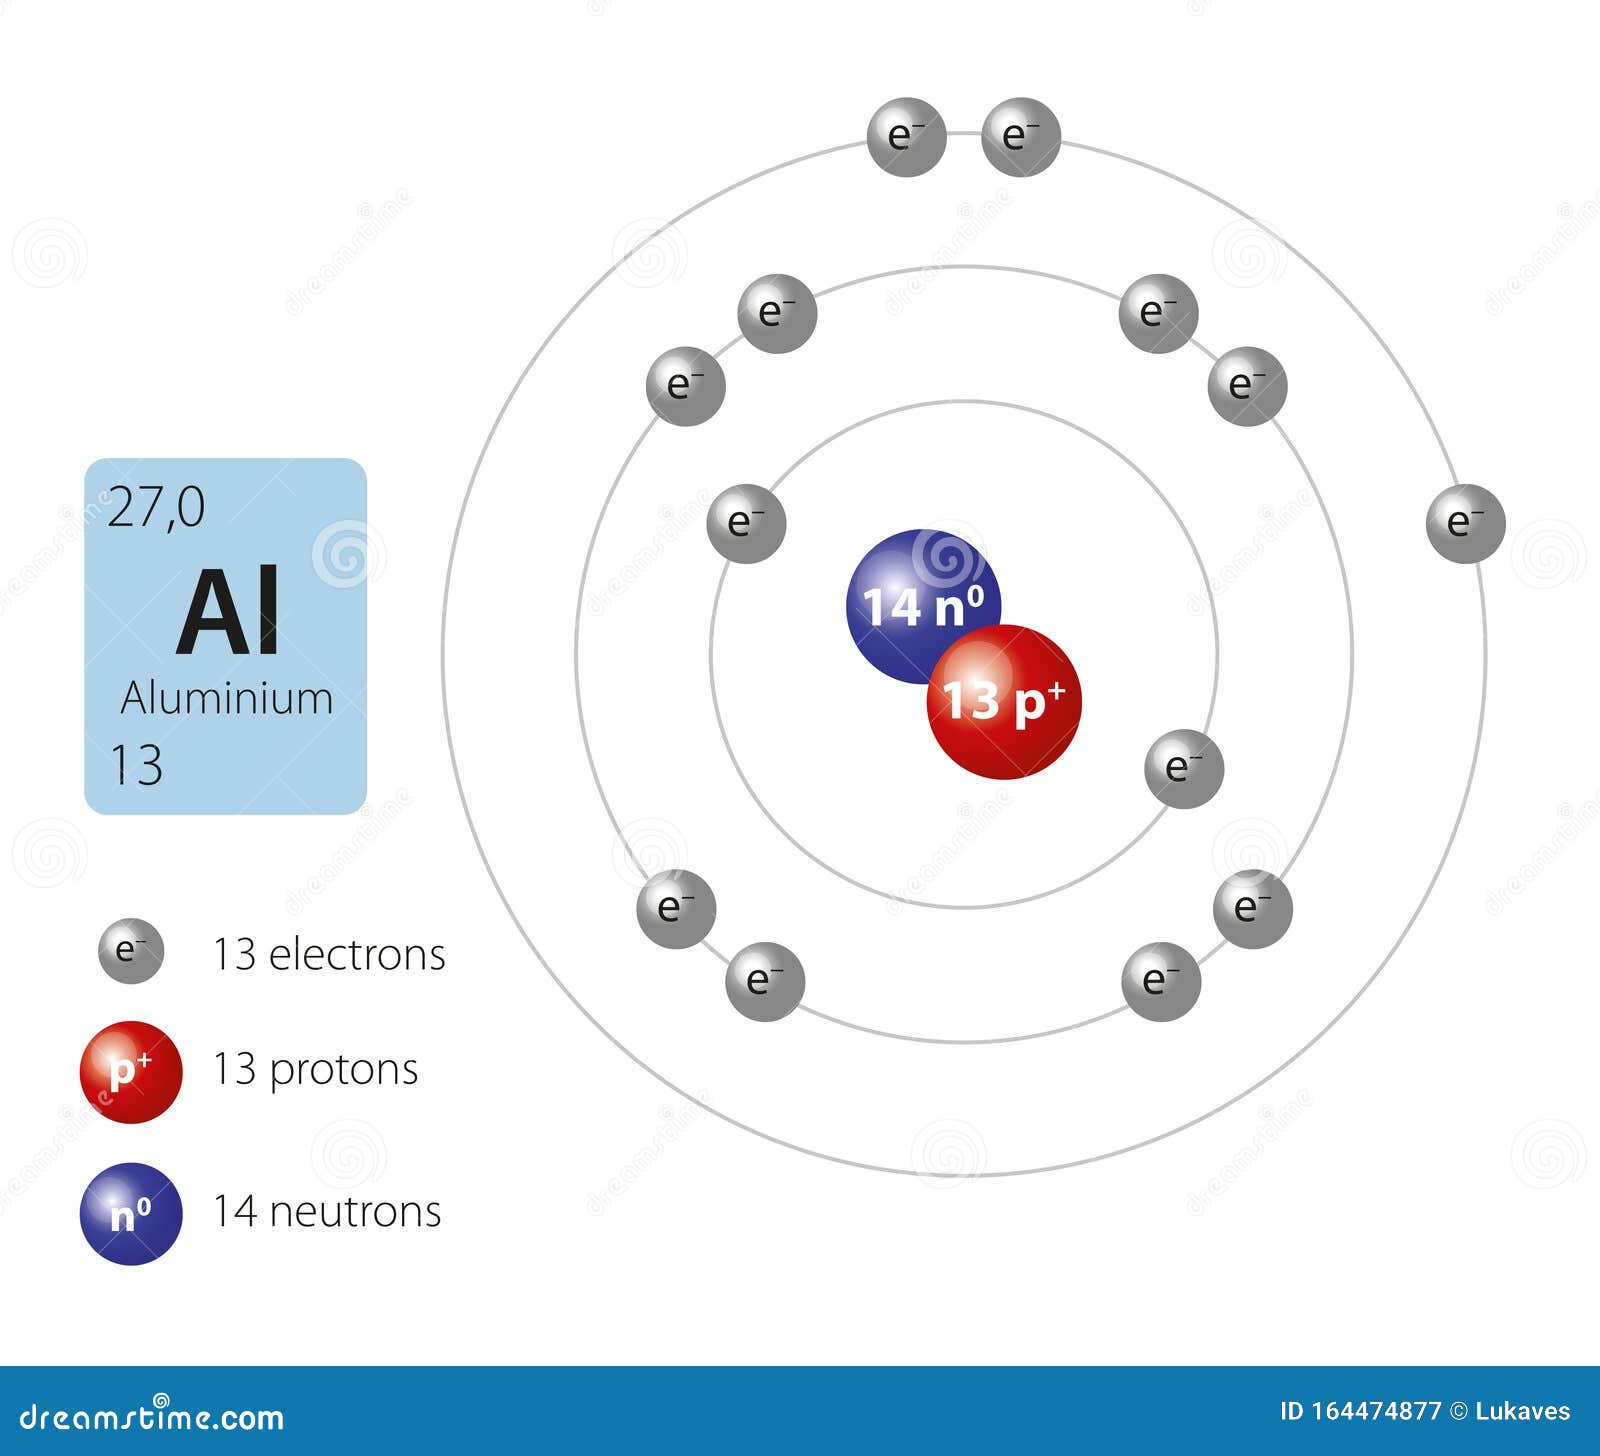 Сколько атомов в магнии. Модель атома алюминия. Атом магния. Модель атома магния. Атом алюминия рисунок.